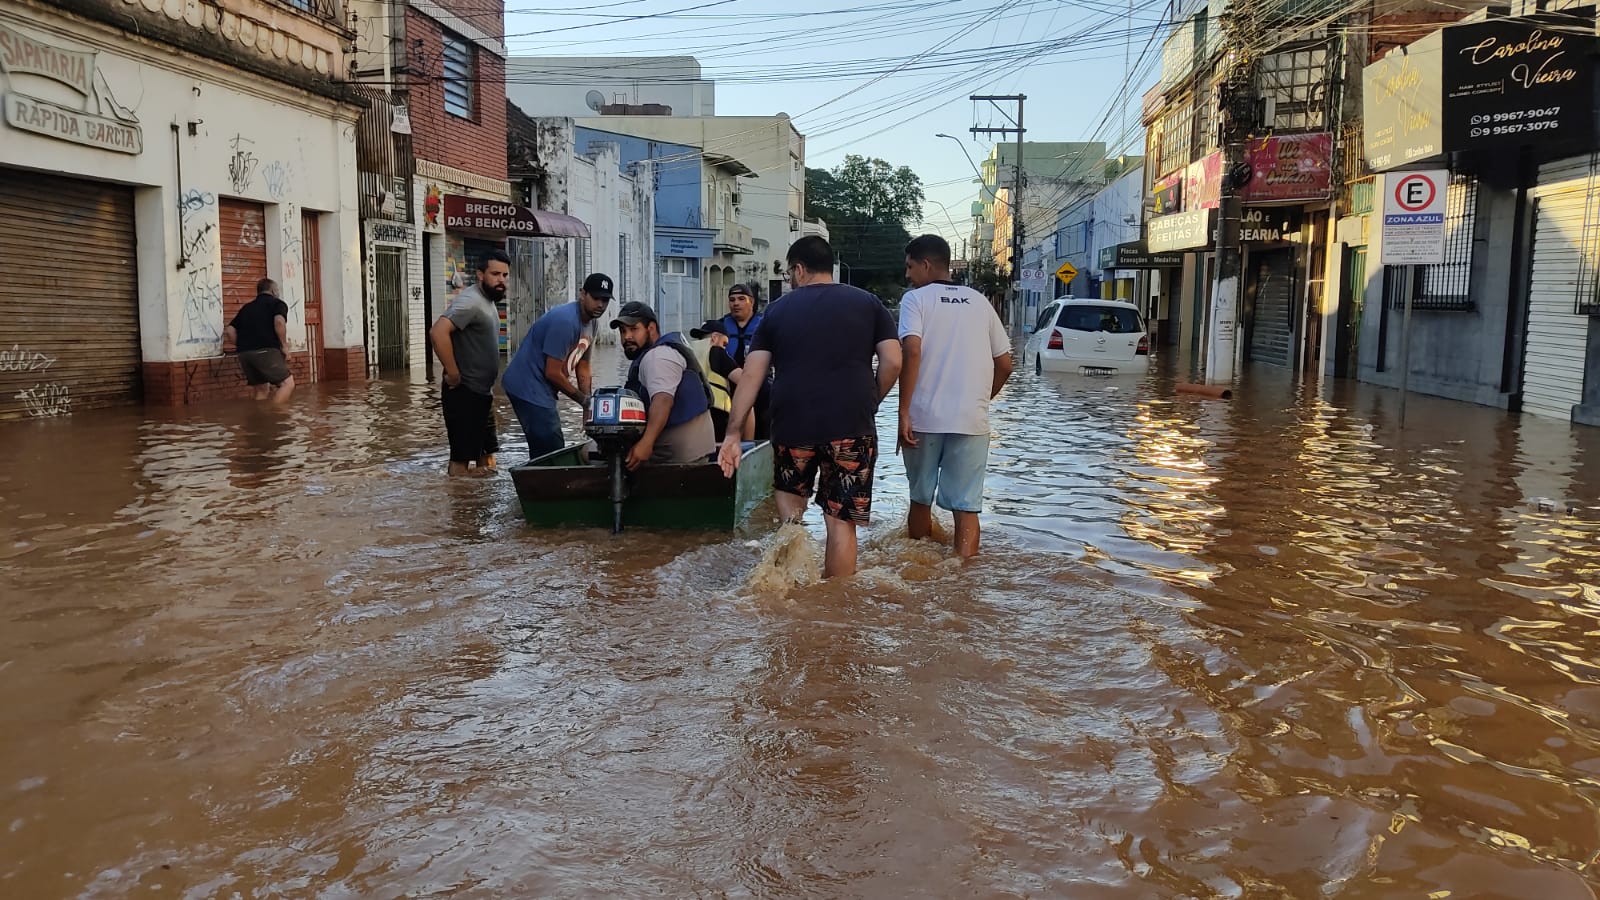 Integrantes da Associação de Angolanos auxiliam no resgate em enchentes gaúchas (Foto: Narrador Kanhanga / Divulgação)